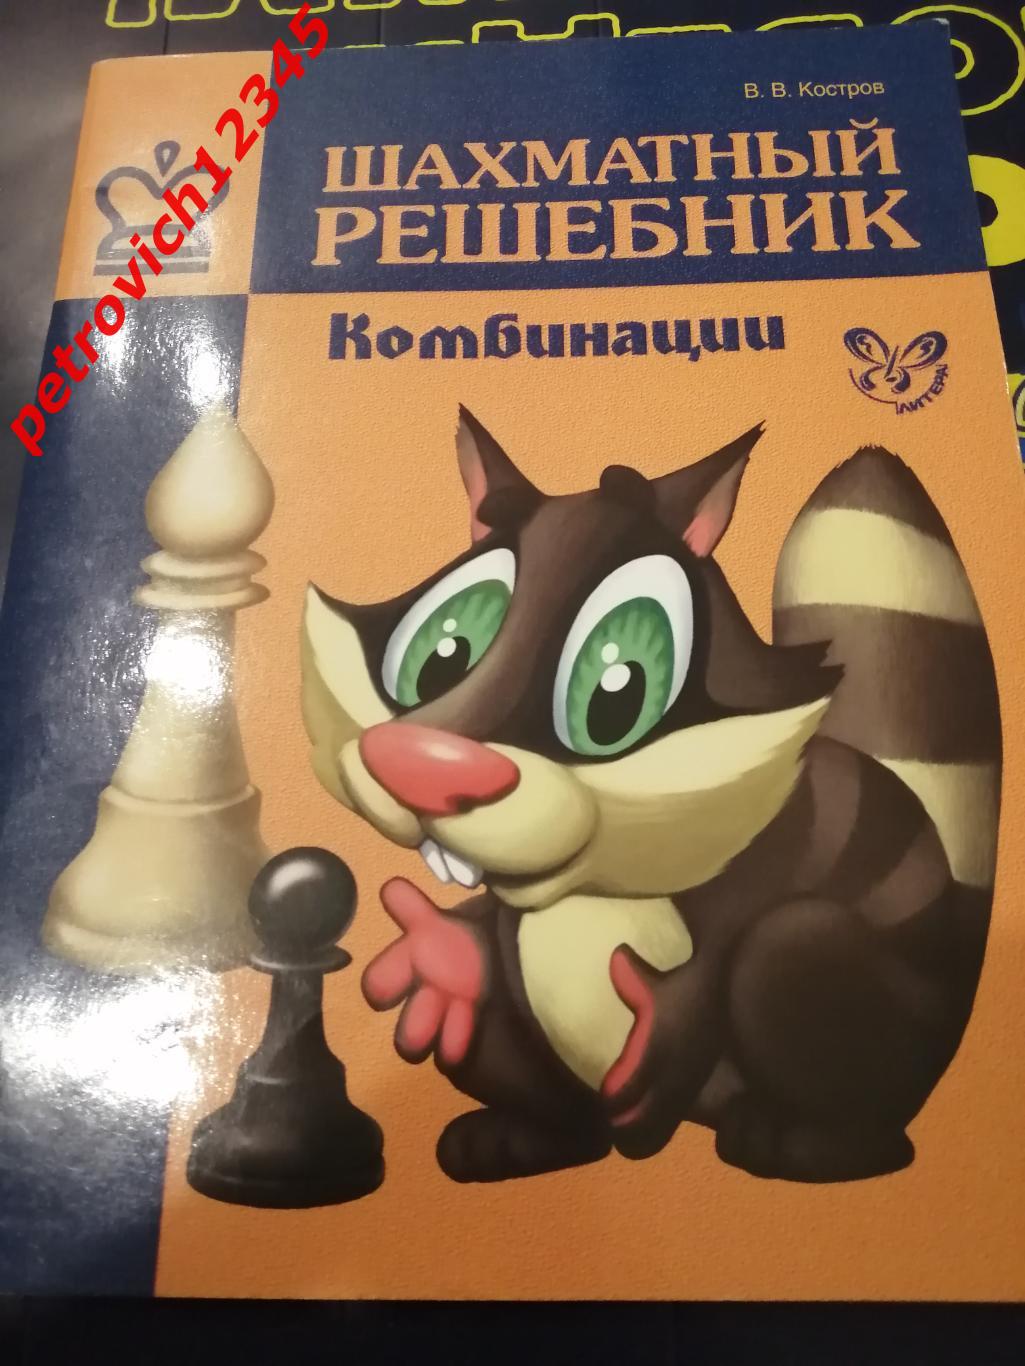 Костров - Шахматный Решебник